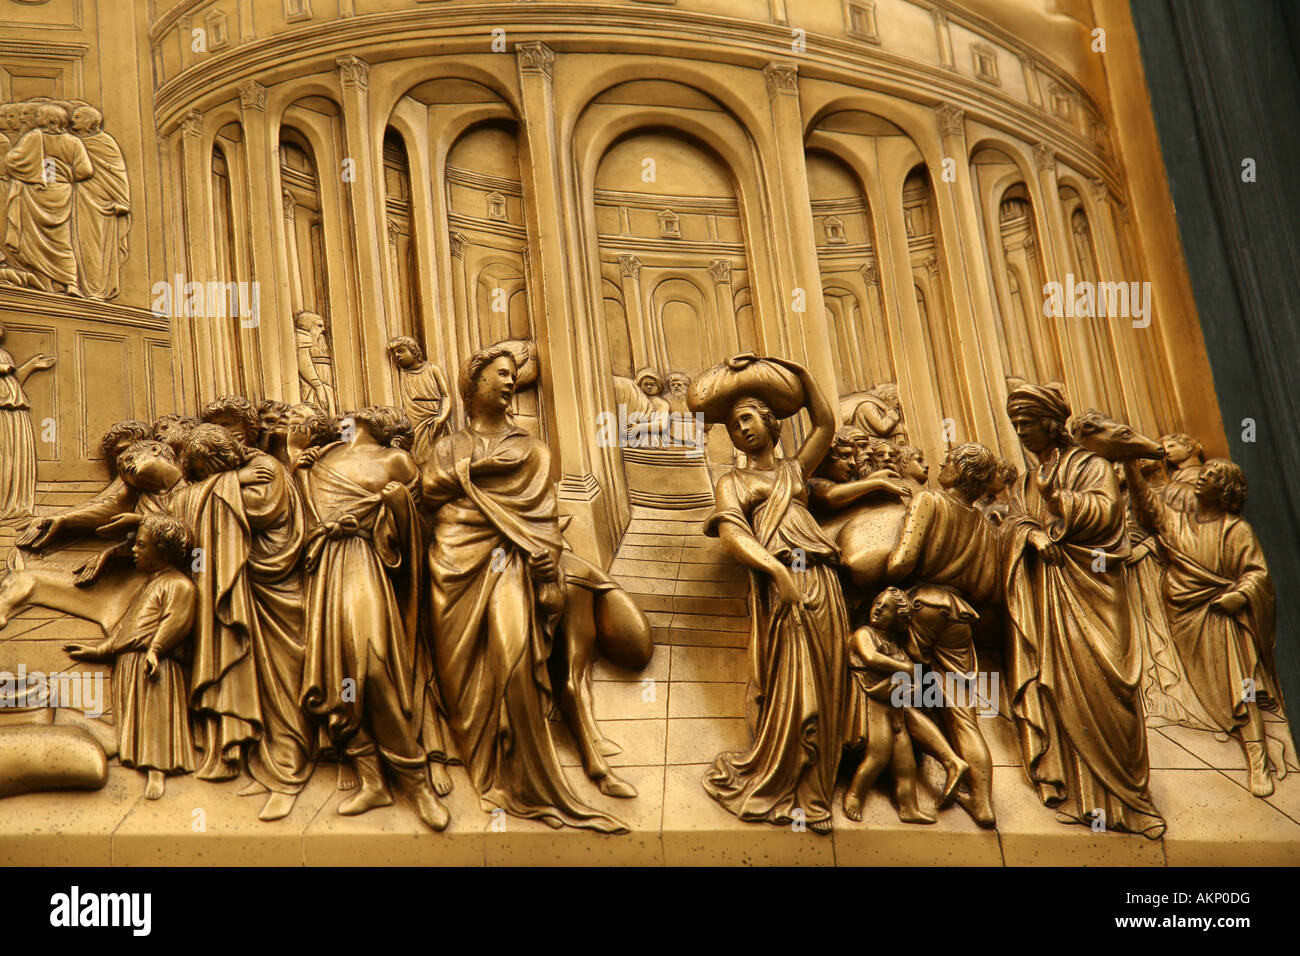 L'activité portes du paradis" ou "Portes du Paradis, les portes de l'est, de Lorenzo Ghiberti, le panneau de Joseph - Baptistère Florence Italie Banque D'Images